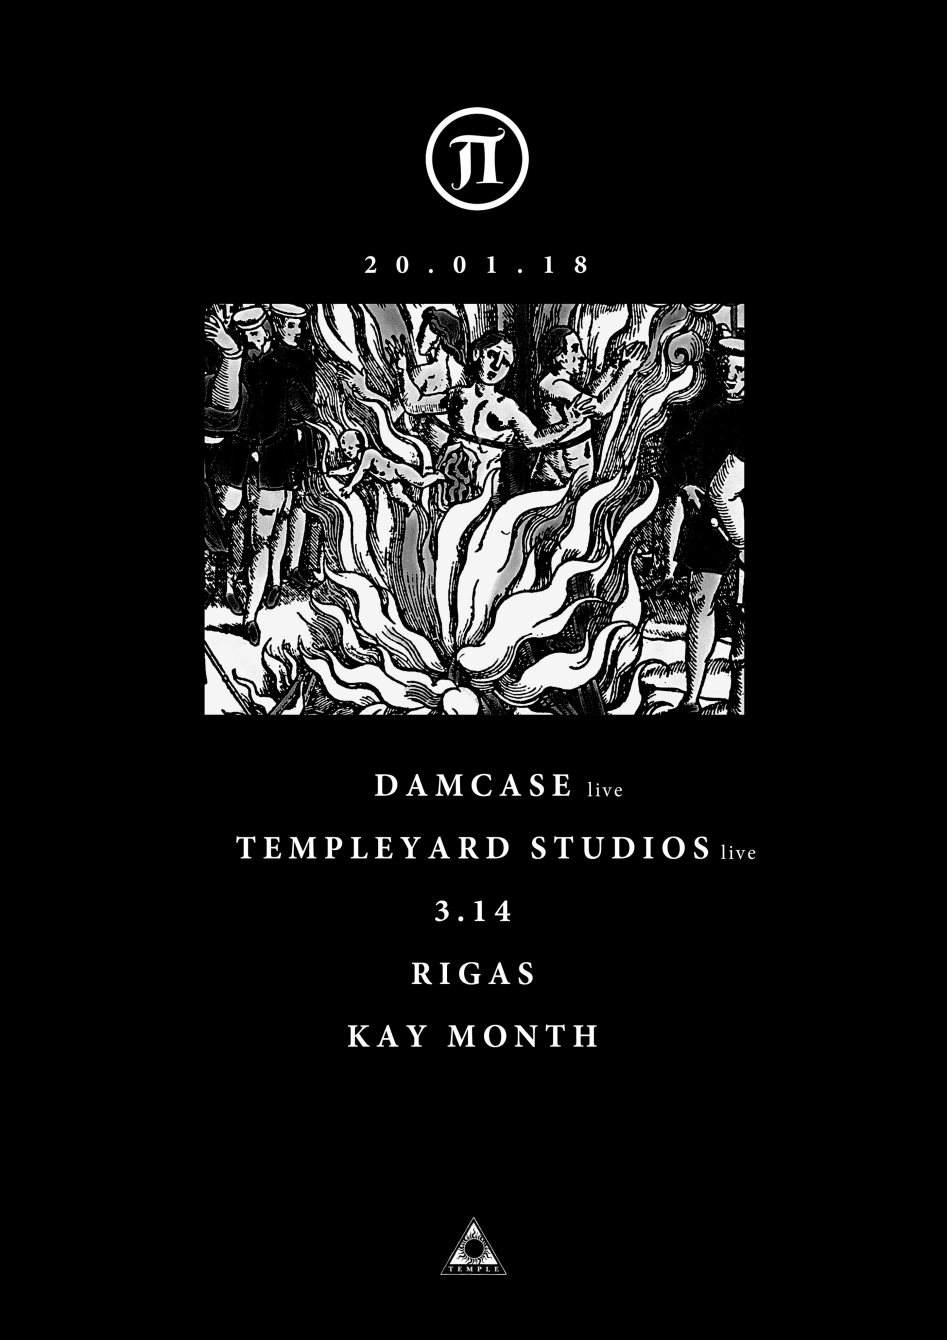 Π29 with Damcase, Templeyard Studios & More - フライヤー裏